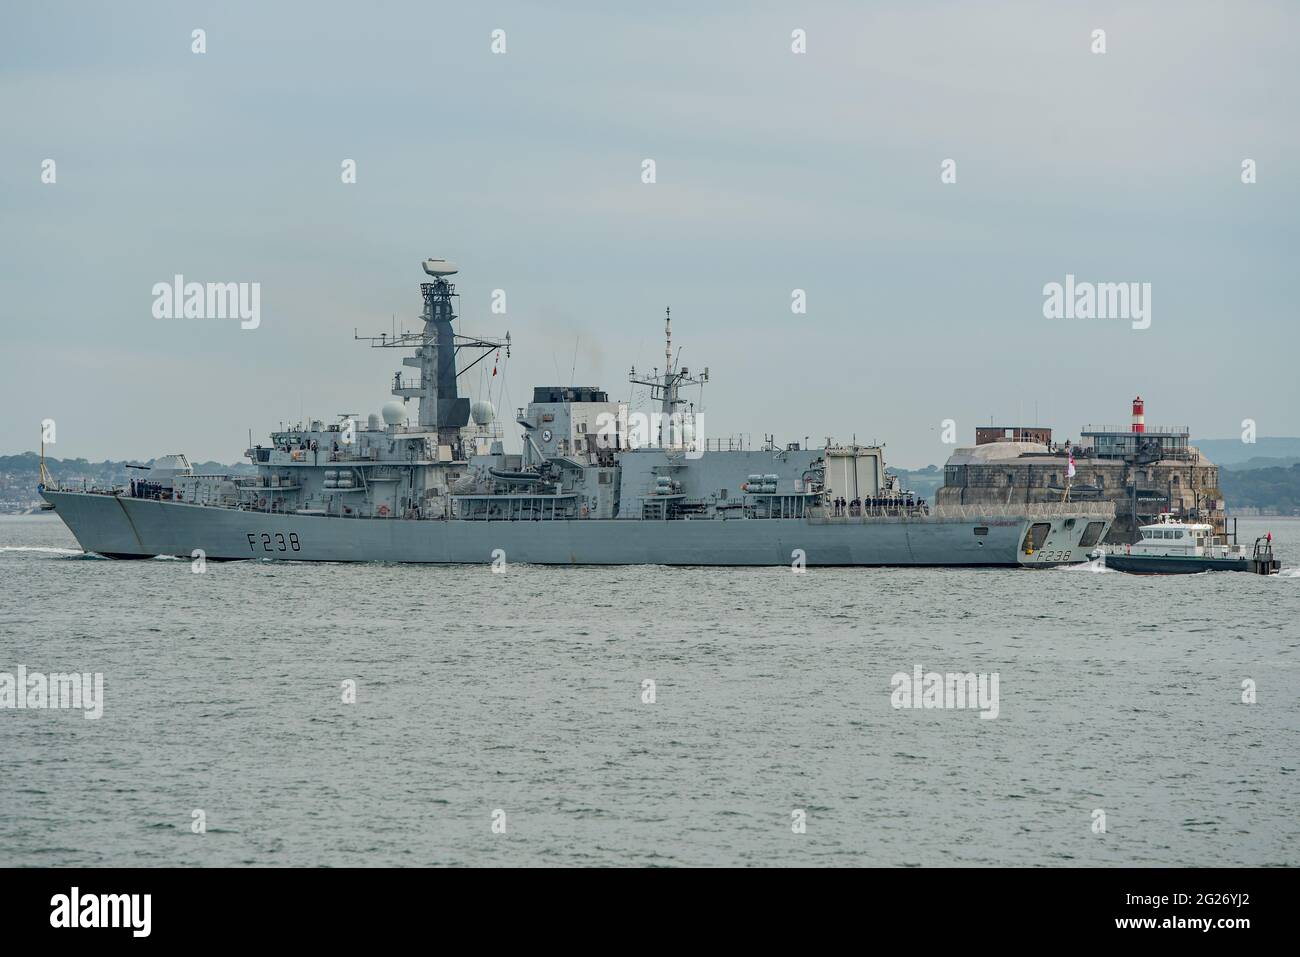 Die Royal Navy Fregatte HMS Northumberland (F238) verlässt Portsmouth, Großbritannien, am 7/6/21 für eine G7 Summit Maritime Security Patrouille vor der Küste Cornichs. Stockfoto